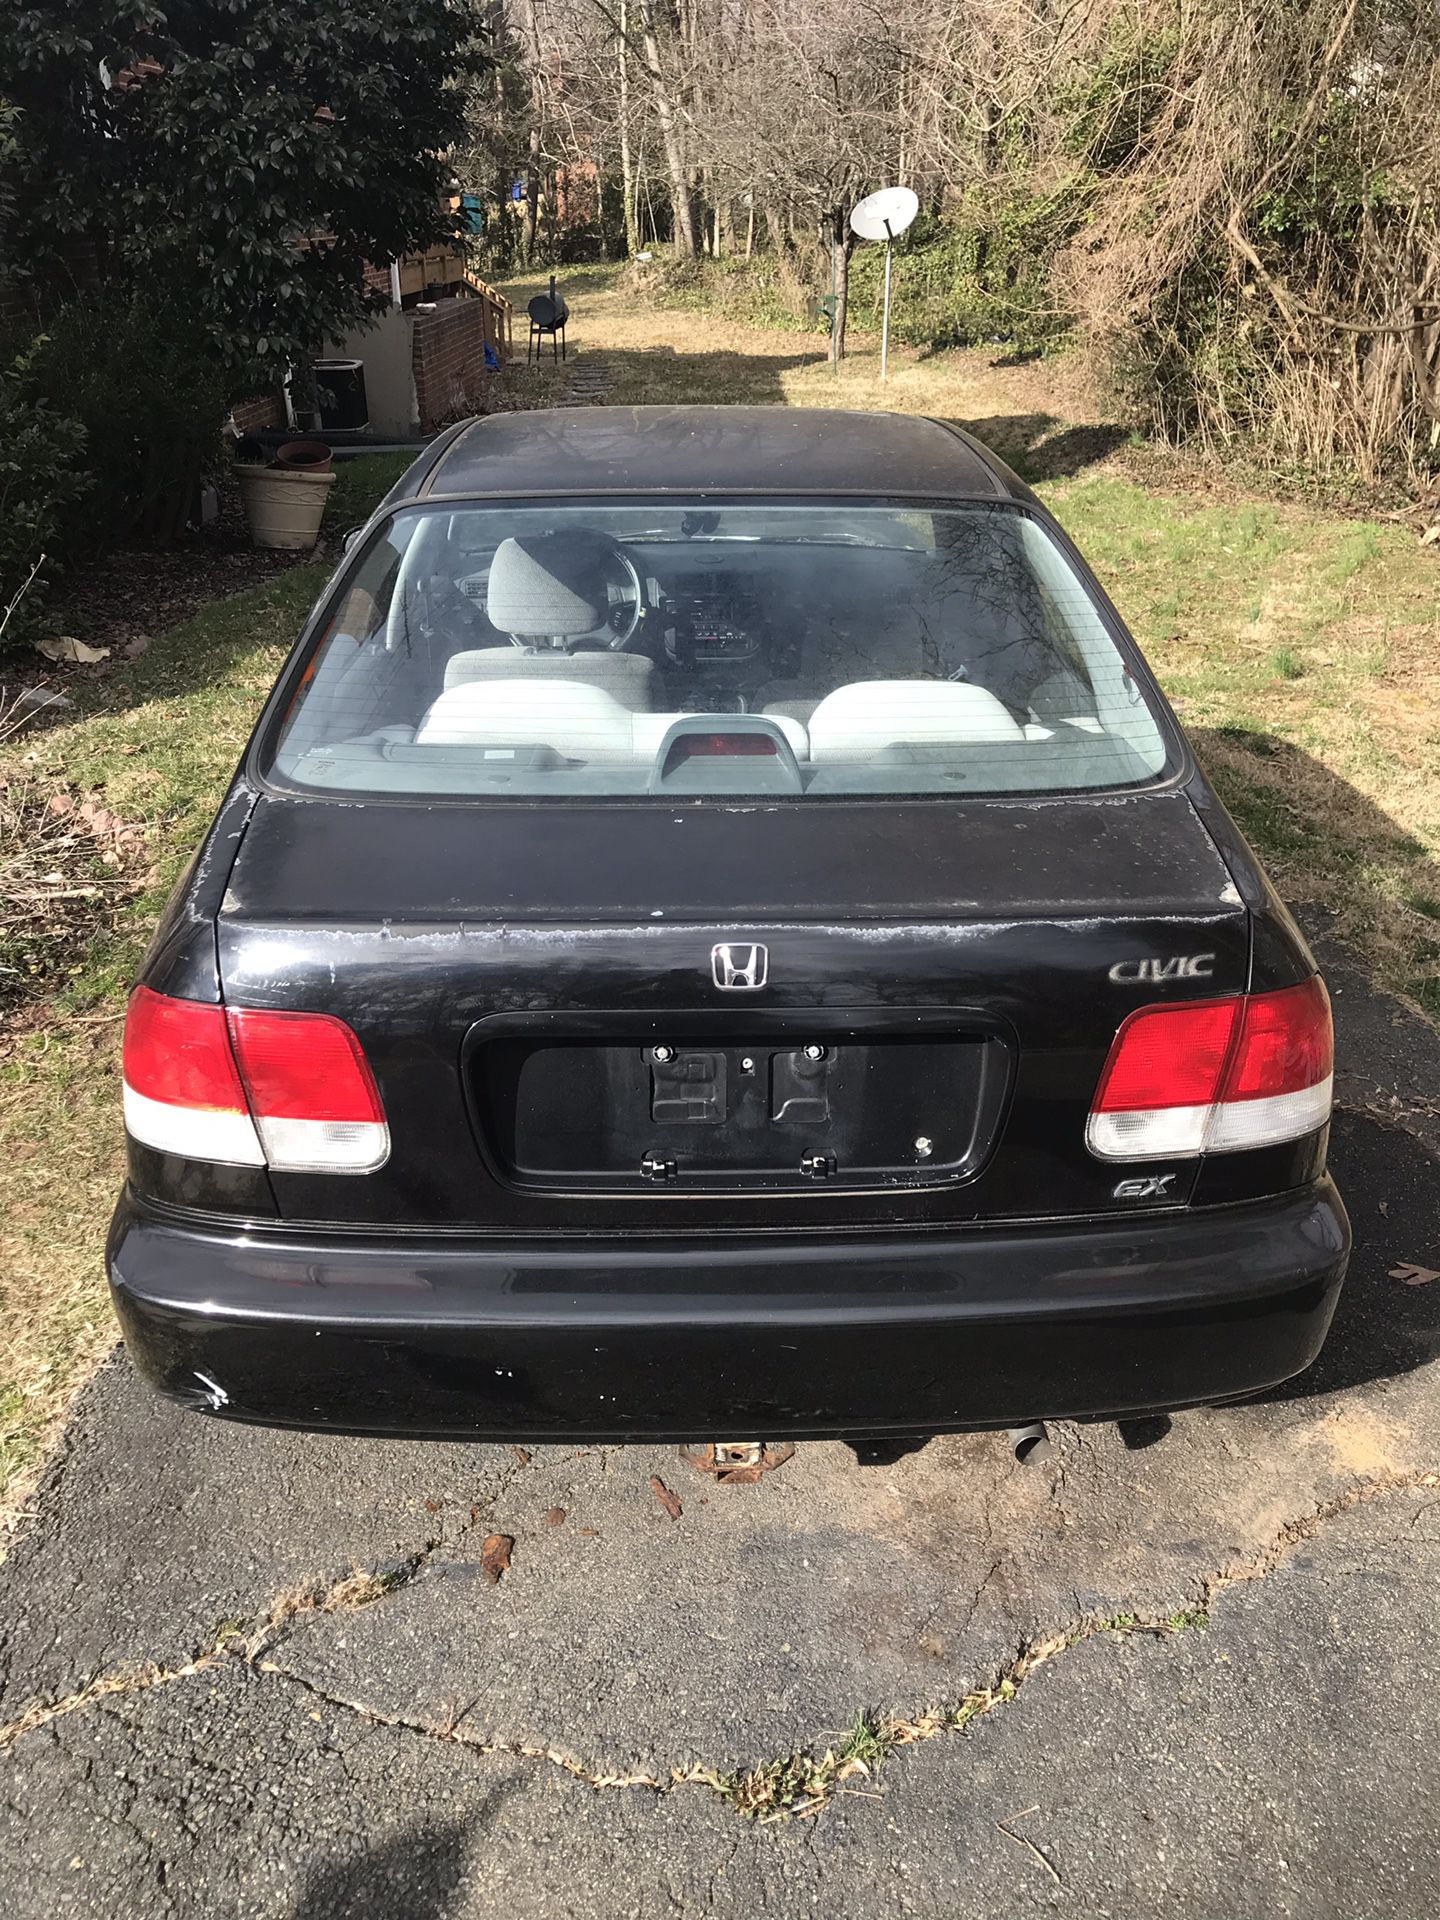 1997 Honda Civic